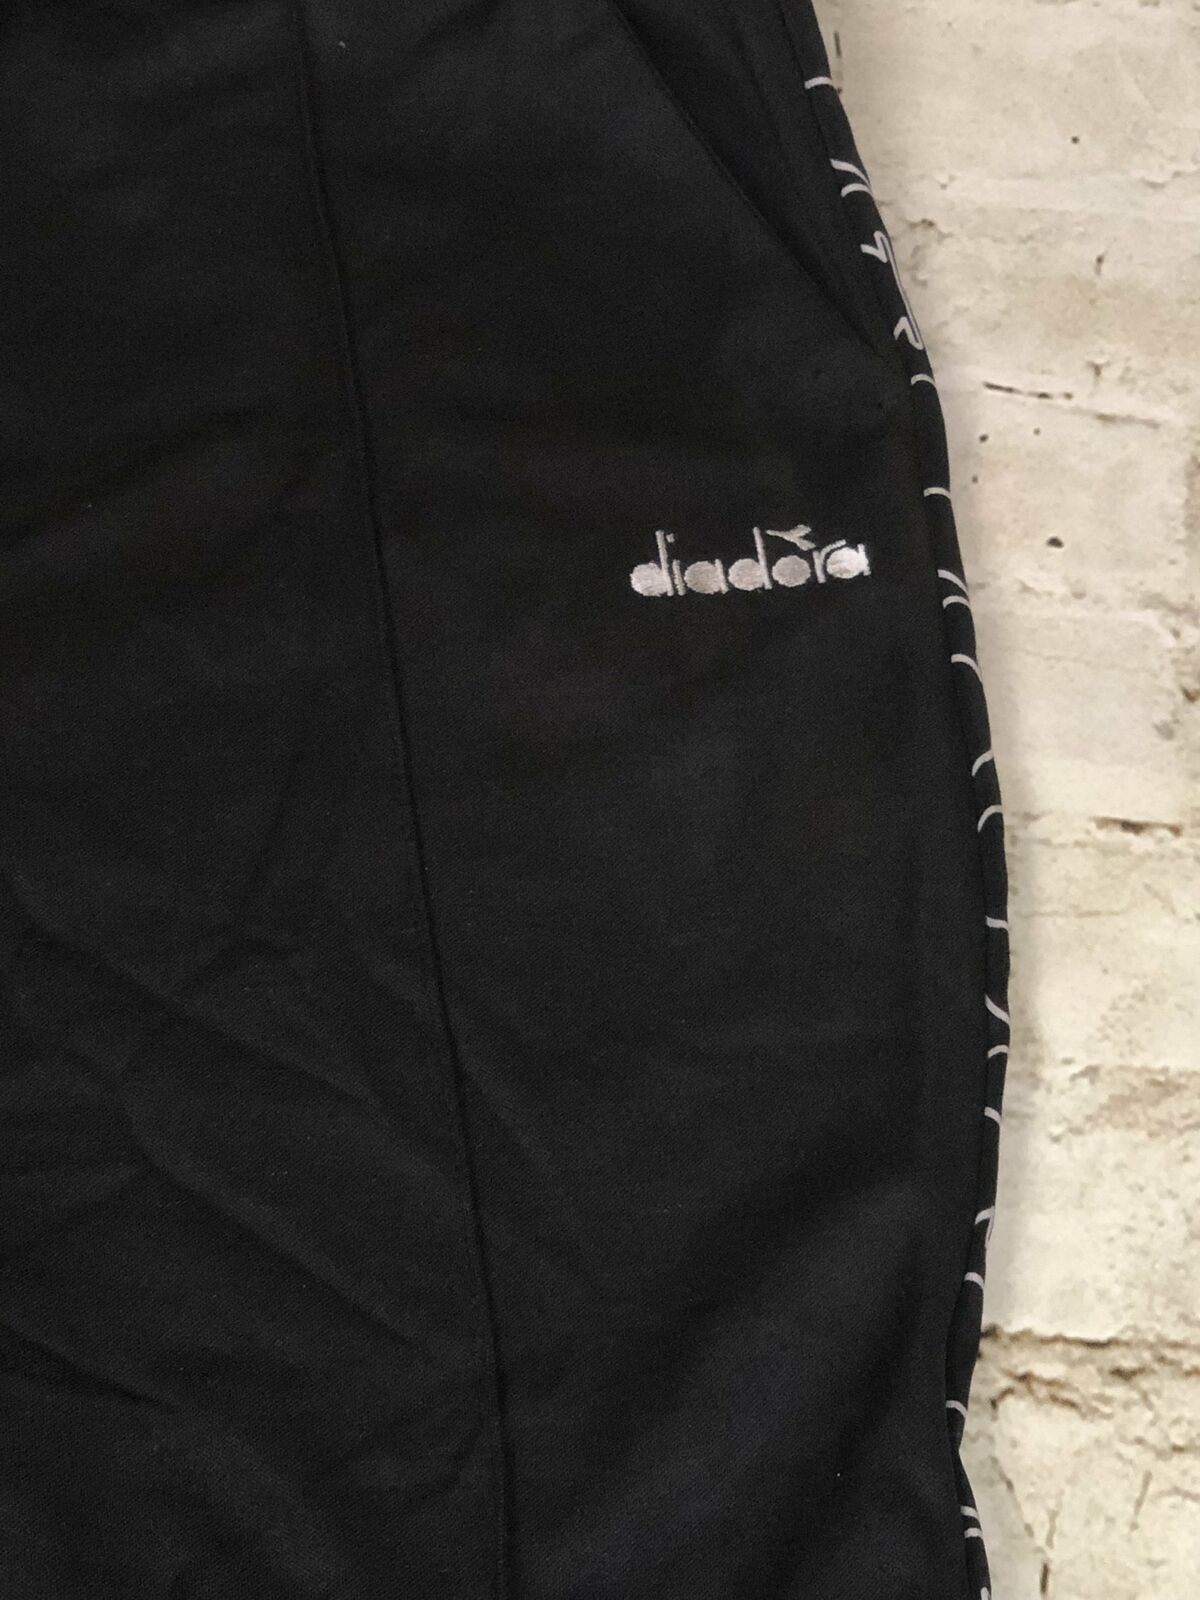 Diadora Logo 80s Style Retro Black Track Pants Joggers Men Size XL NEW -  beyond exchange